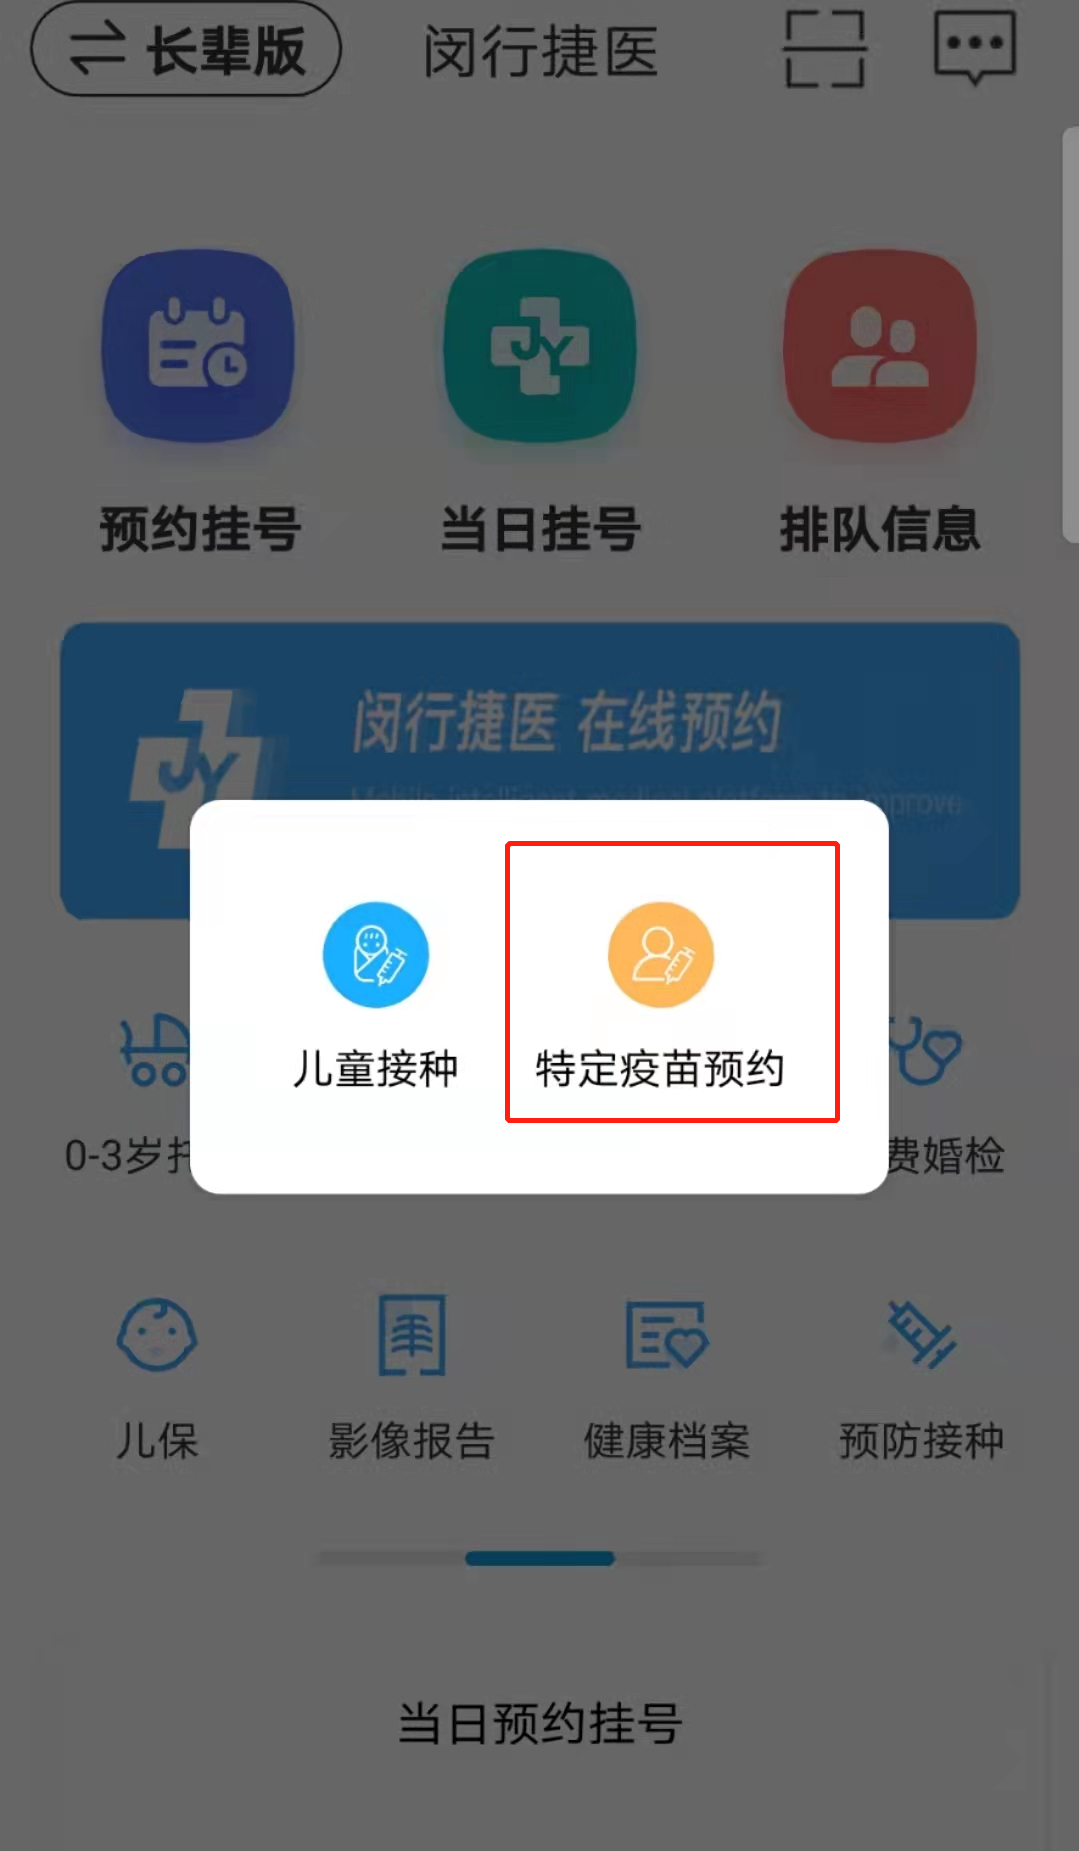 上海闵行区HPV疫苗在线预约流程：2价、4价、9价 HPV疫苗